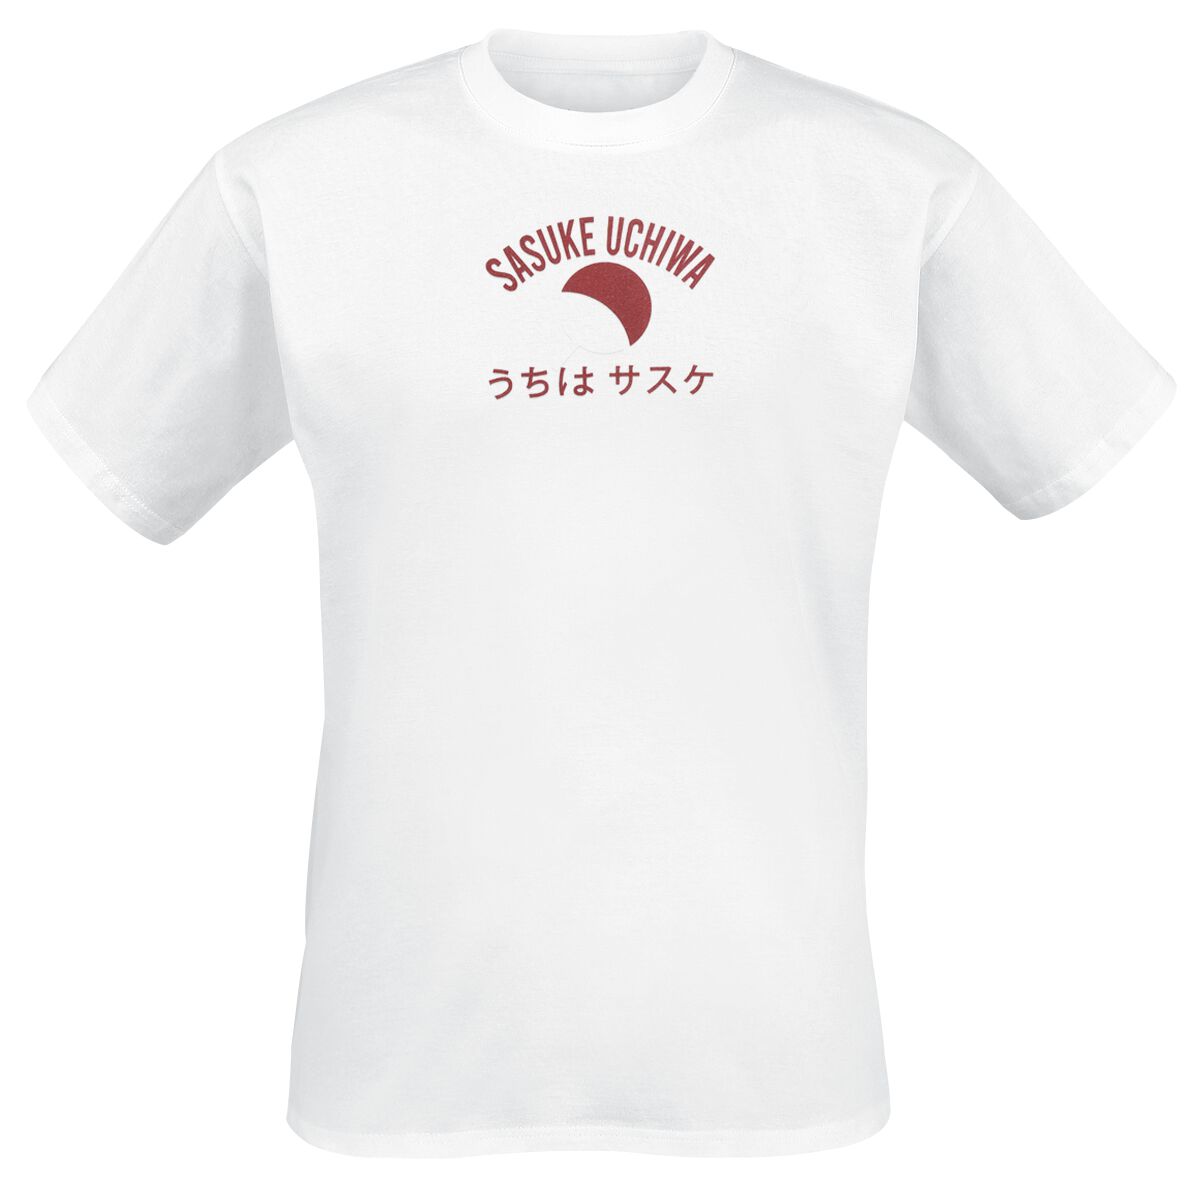 Naruto Sasuke Uchiha - Attack T-Shirt weiß in XL